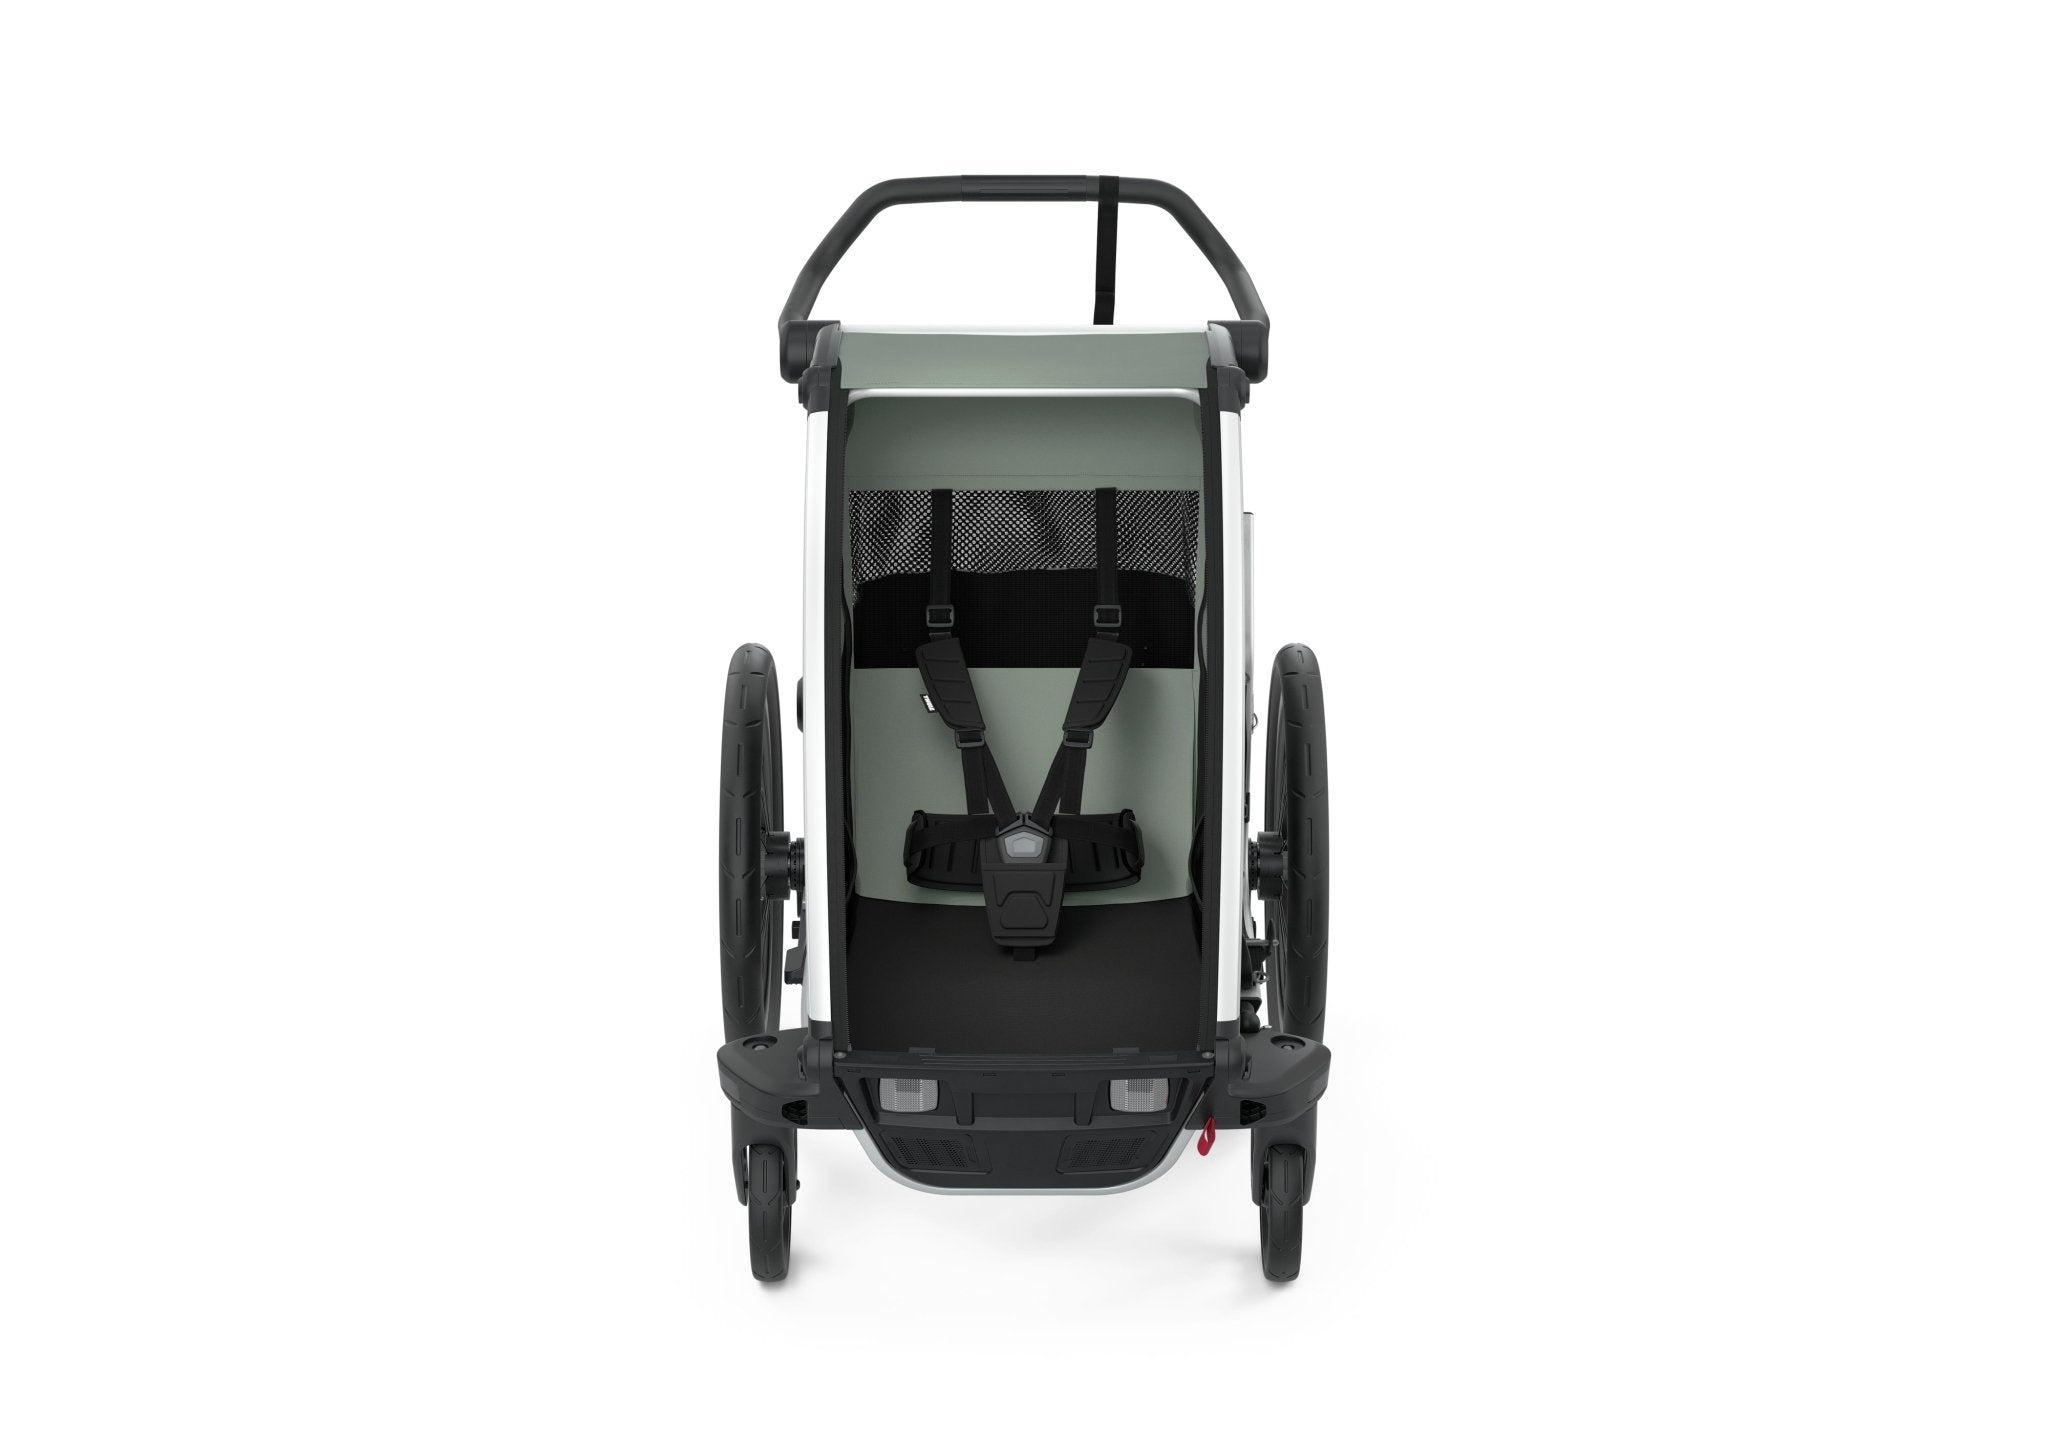 Thule Chariot Lite 1 Multisport Trailer & Stroller, Agava - ANB Baby -$500 - $1000